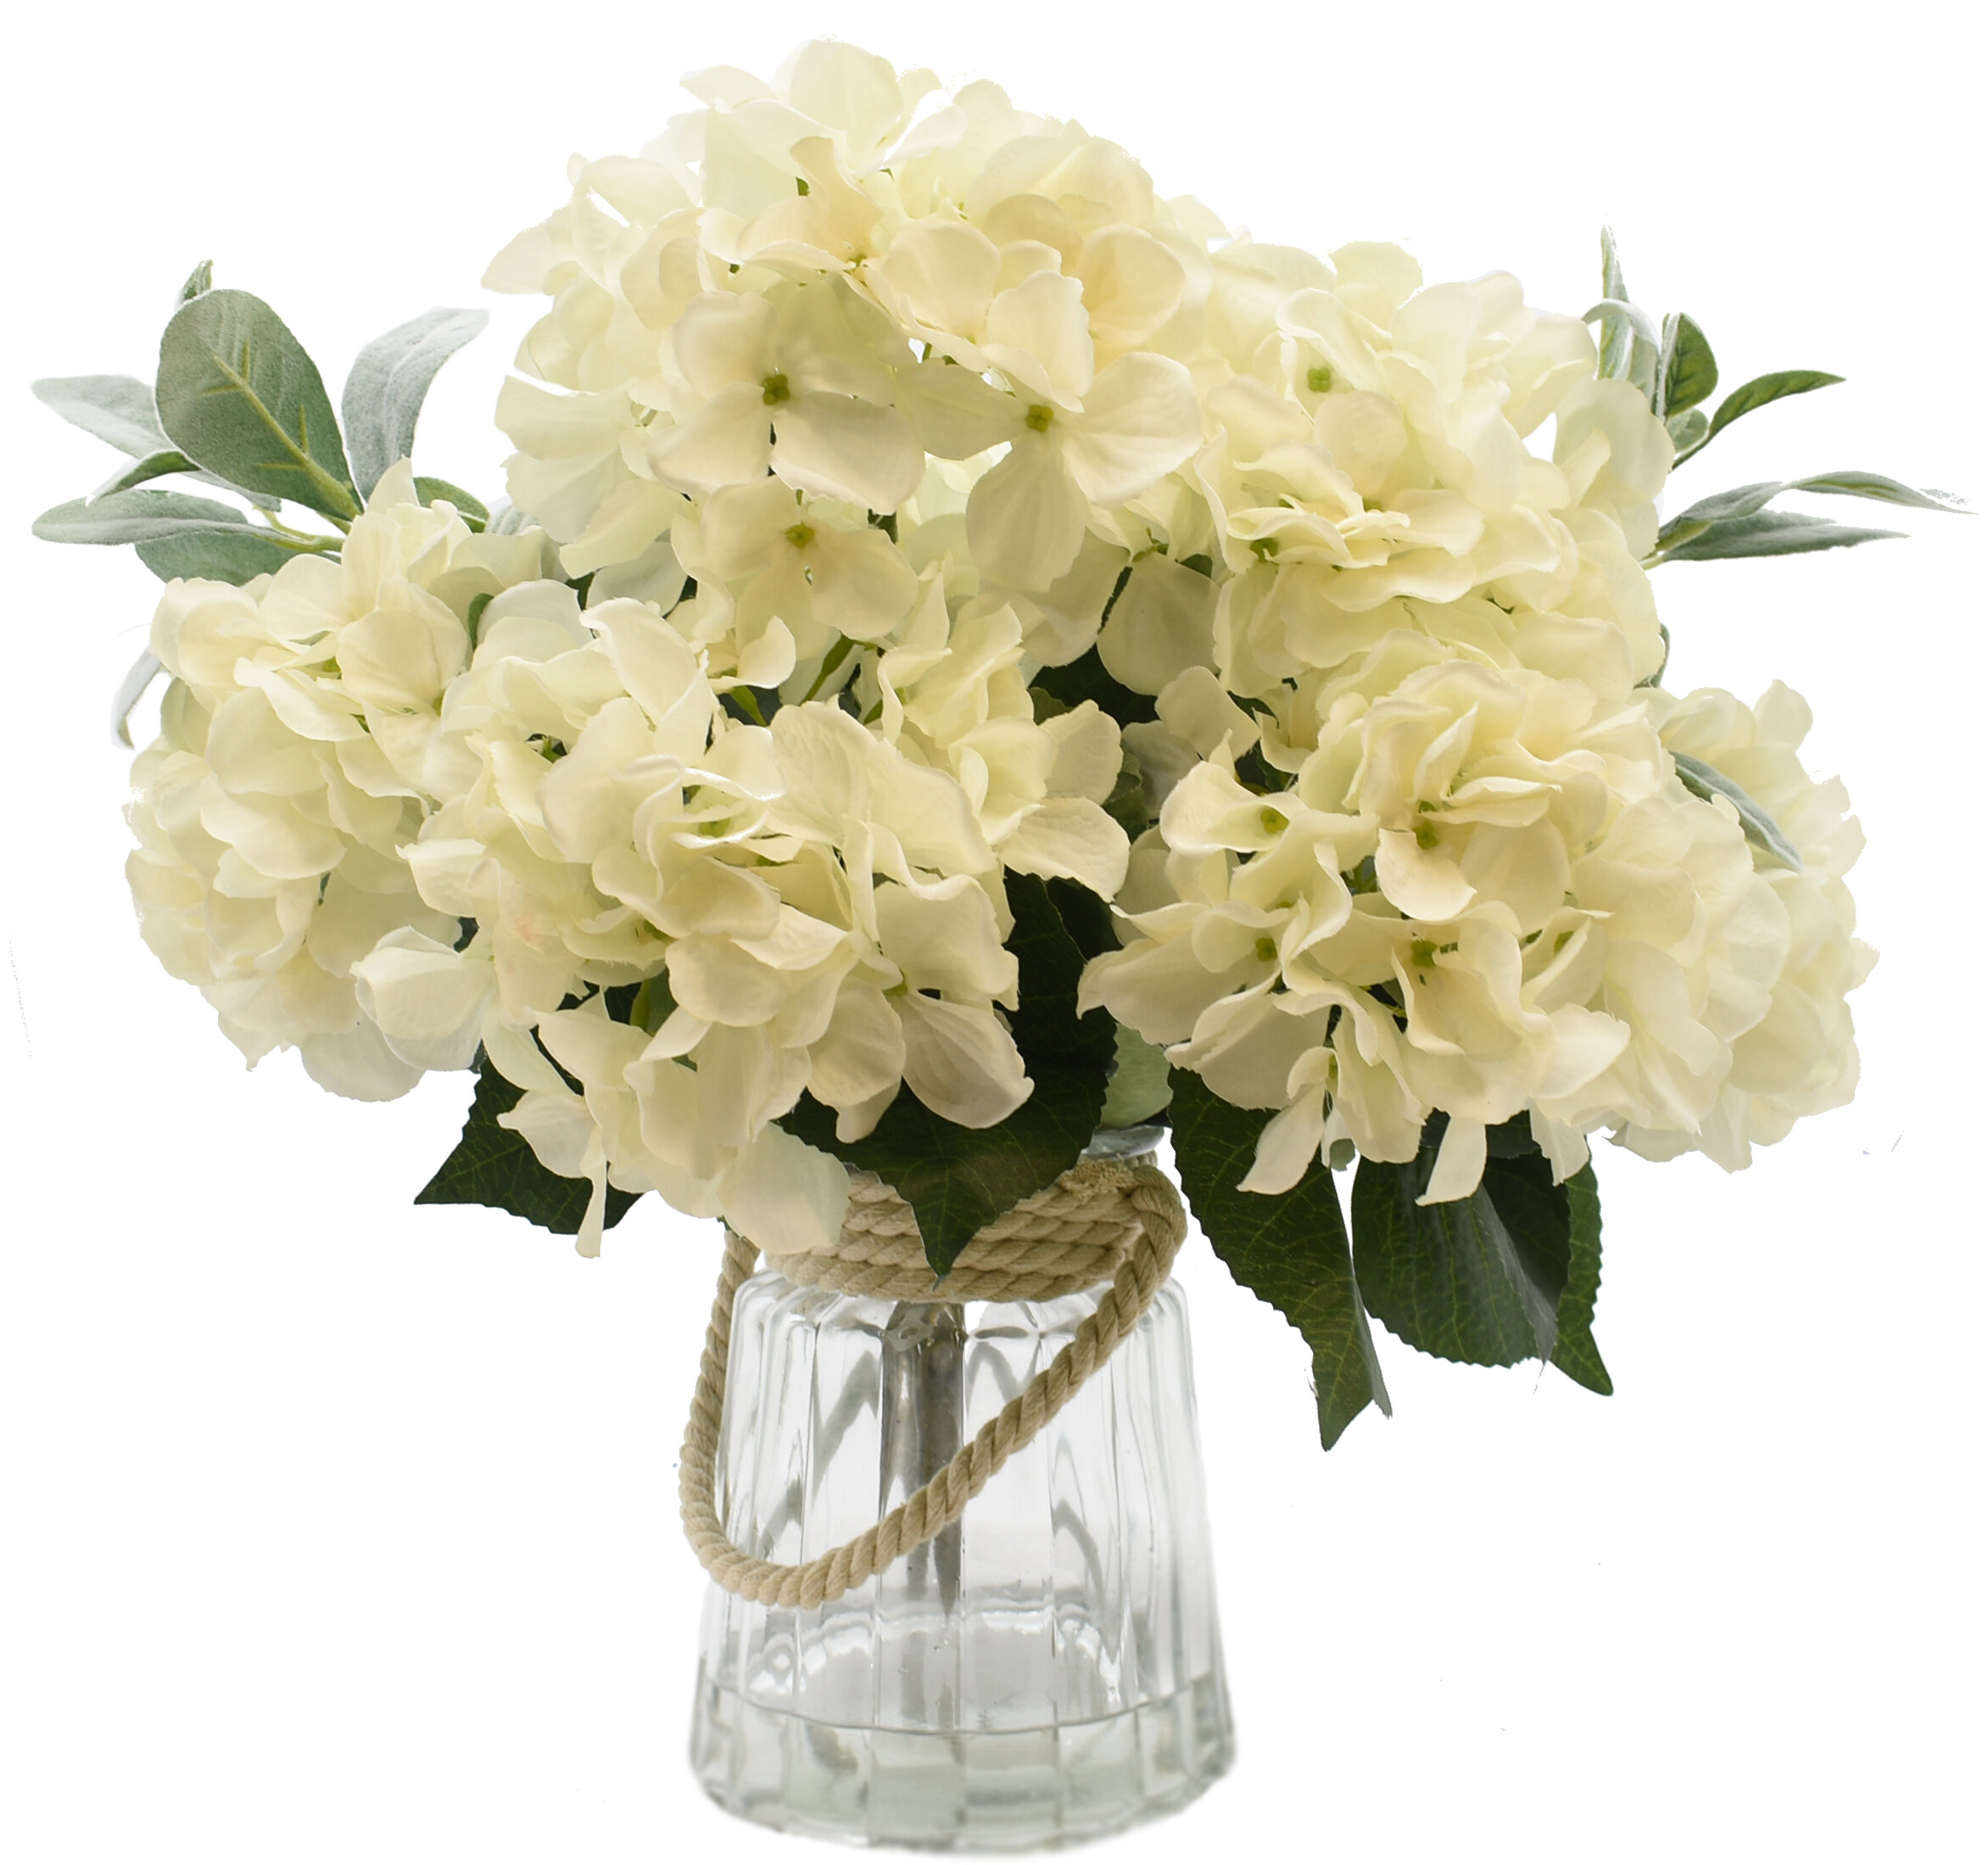 Highland Dunes Hydrangea Floral Arrangement And Centerpiece In Vase Wayfair